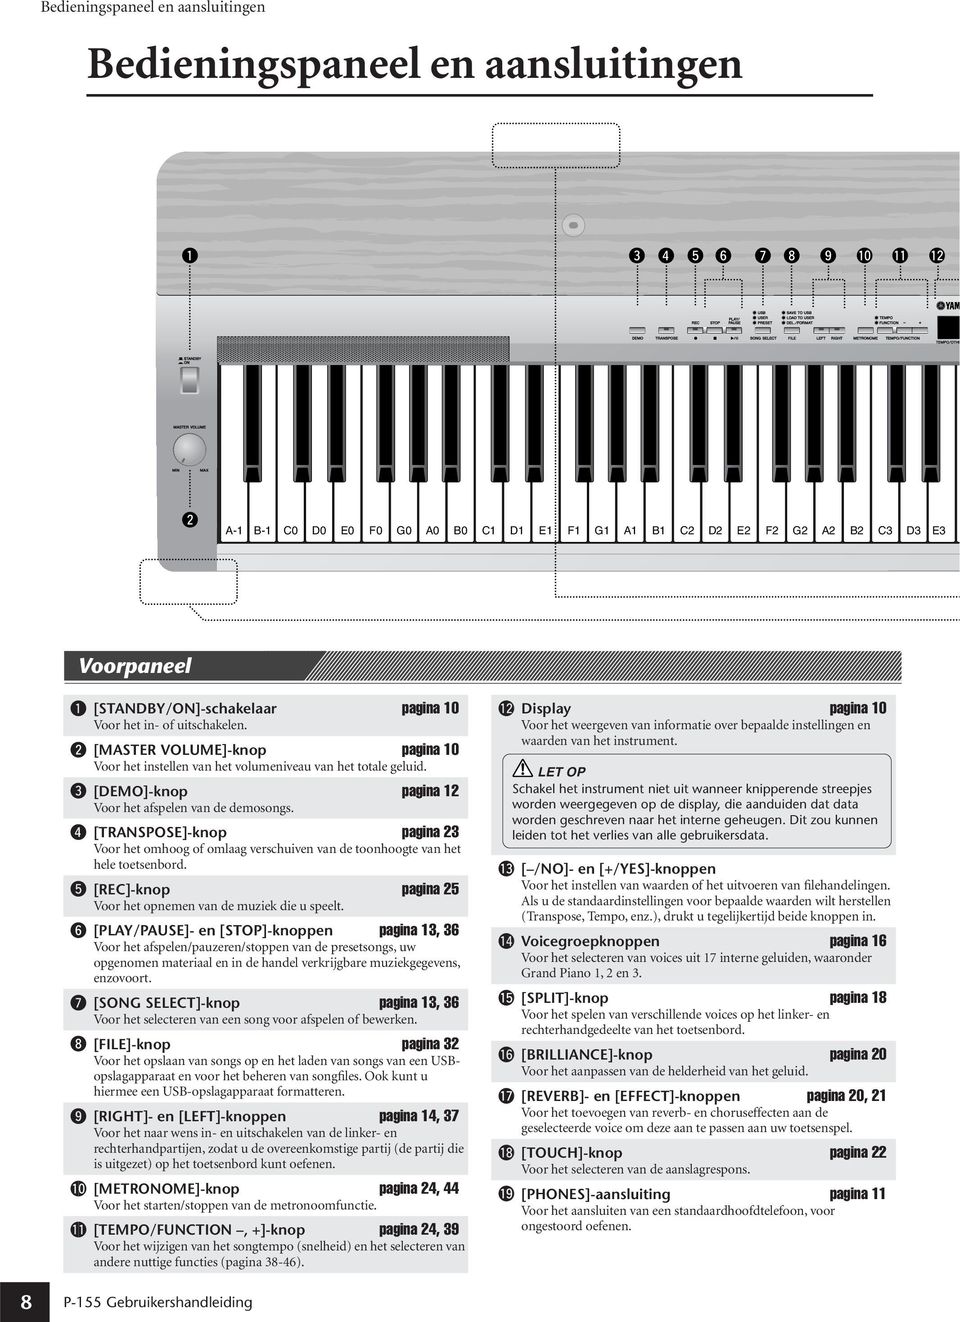 w [MASTER VOLUME]-knop pagina 10 Voor het instellen van het volumeniveau van het totale geluid. e [DEMO]-knop pagina 12 Voor het afspelen van de demosongs.